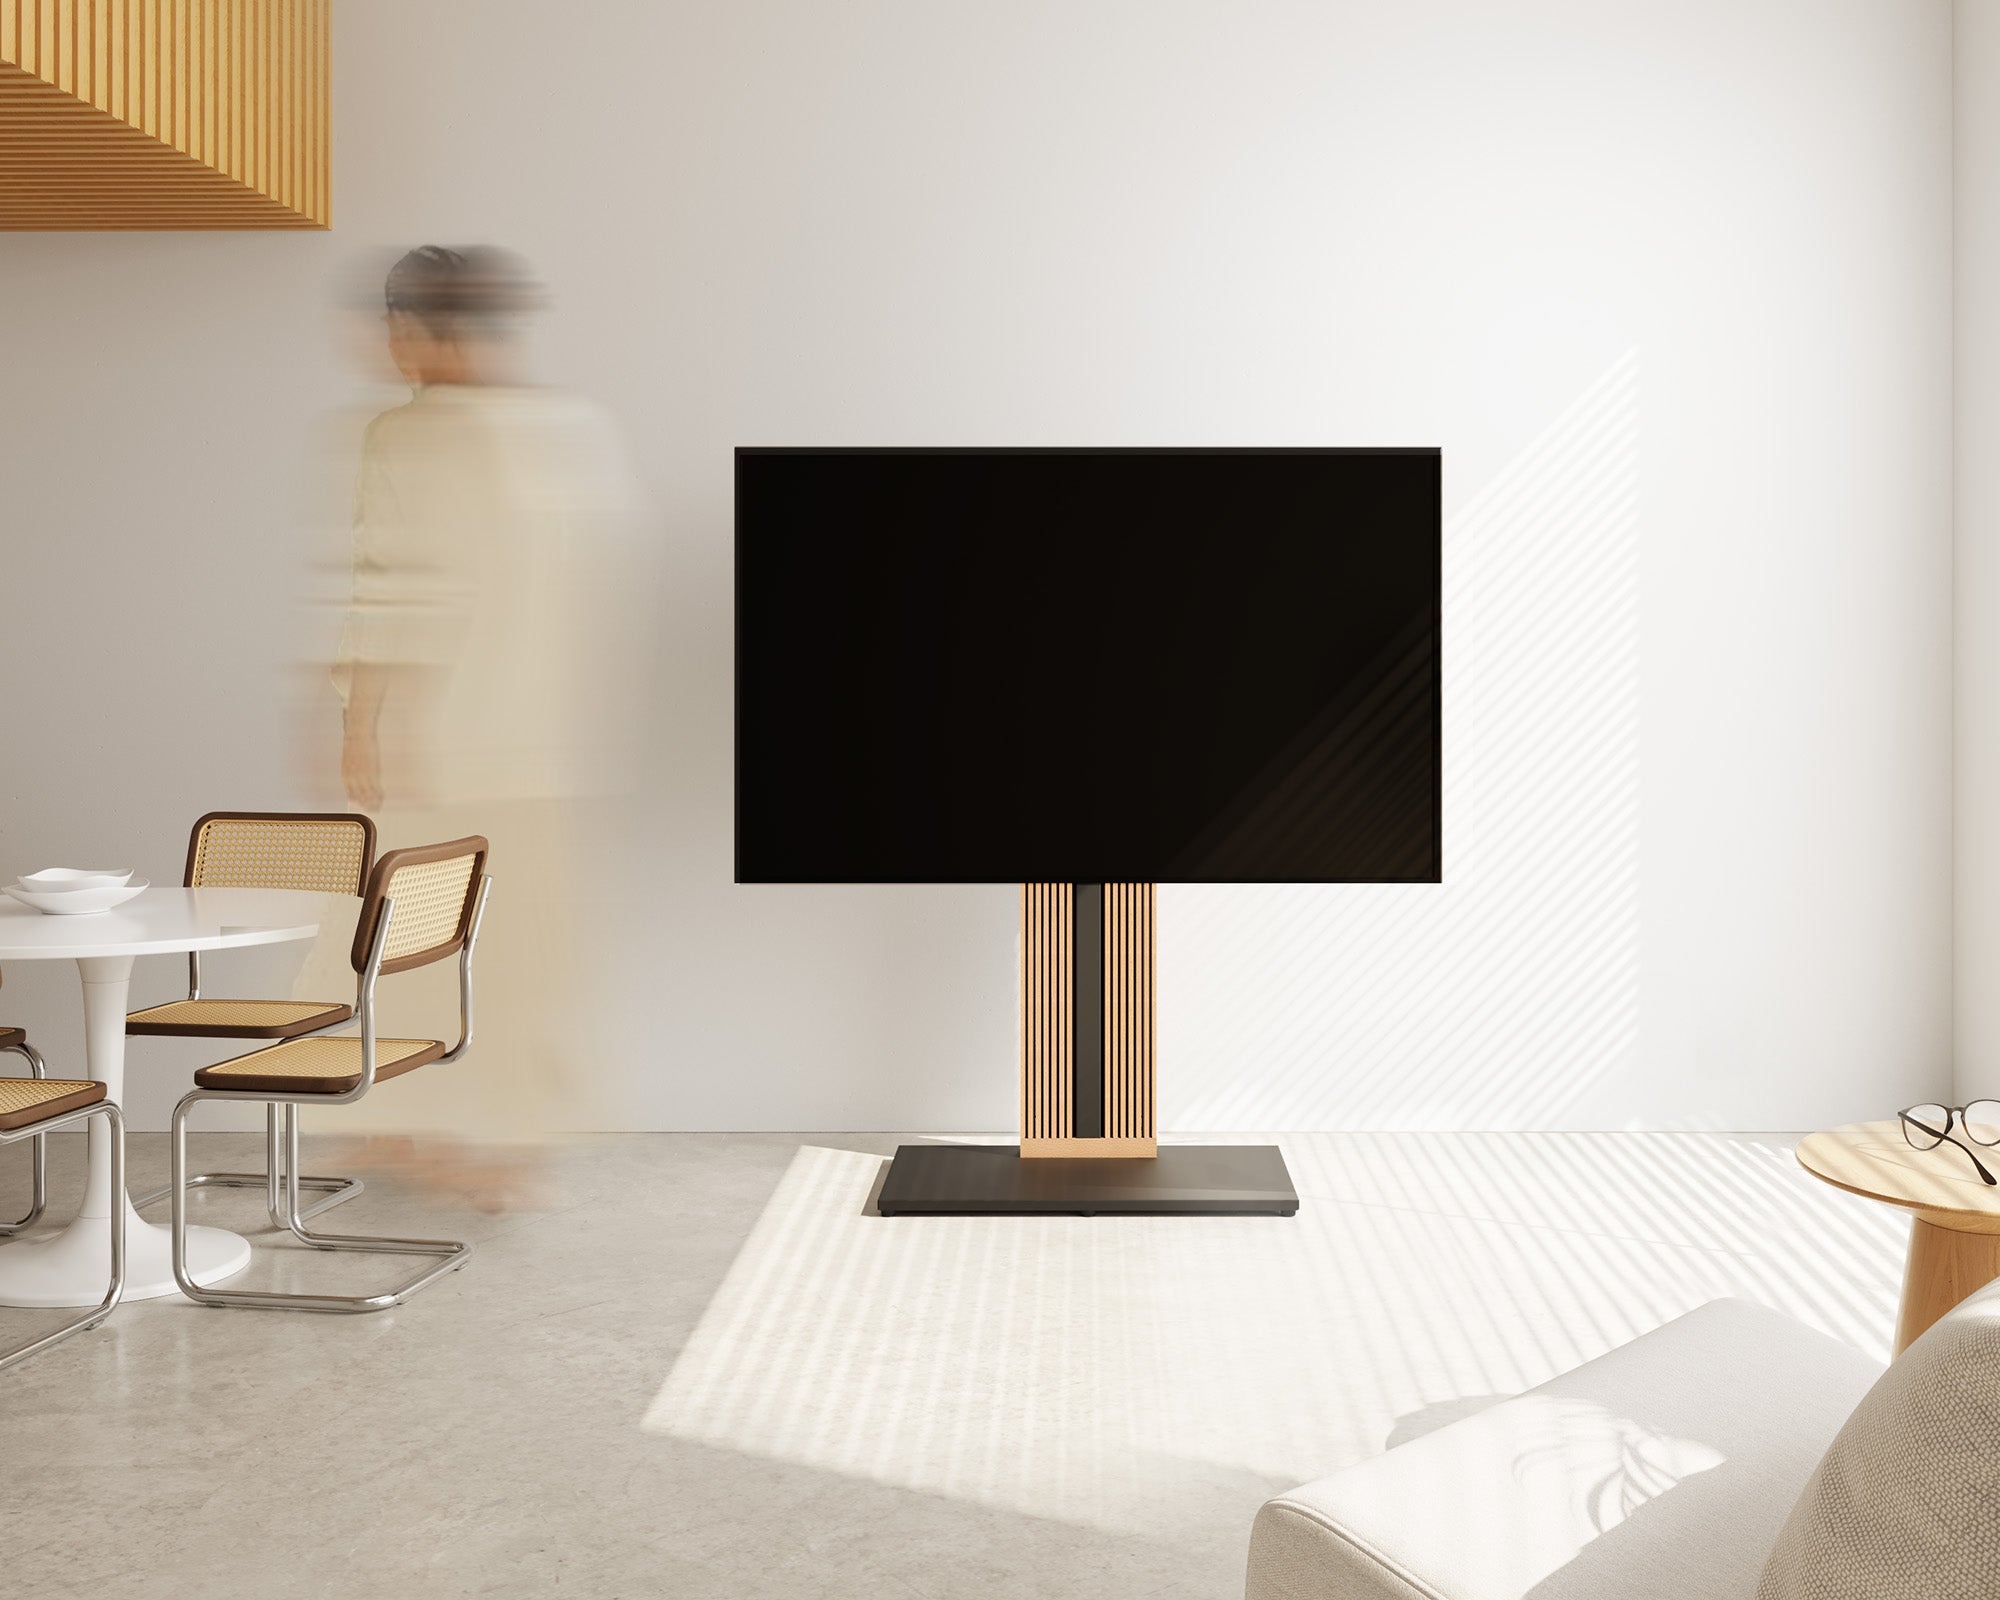 Floor TV Stand Zen Series 55-88 inch